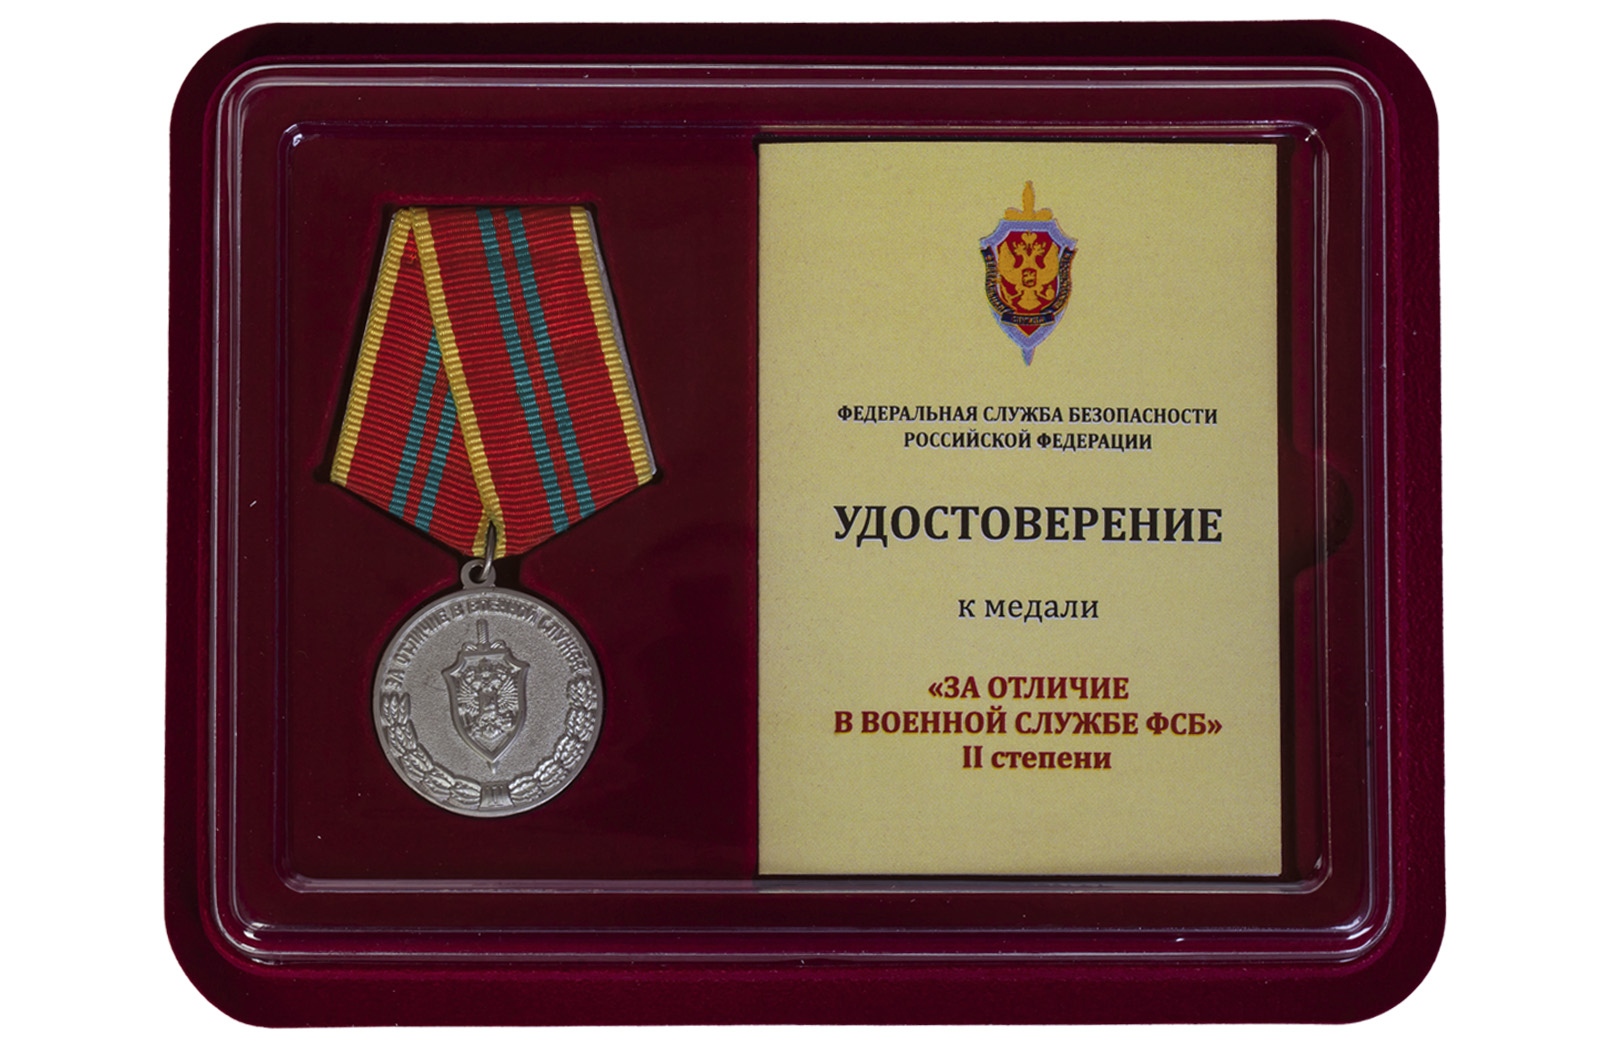 Купить ведомственную медаль За отличие в военной службе ФСБ II степени в подарок